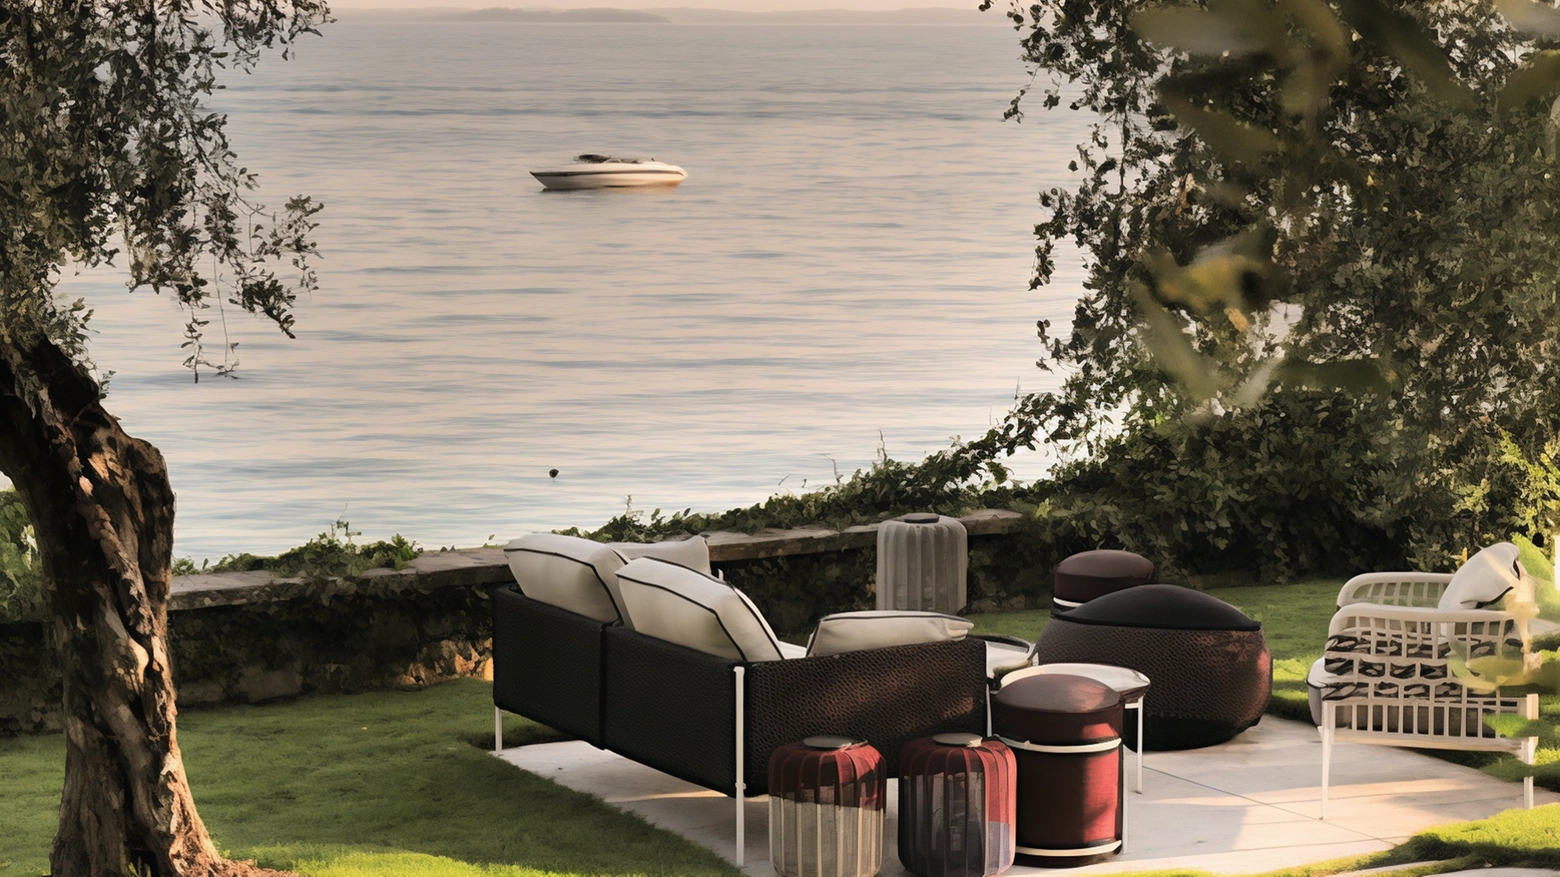 La famiglia Rana ha creato Riviera a Punta San Vigilio sul Lago di Garda, un progetto che celebra la natura e l'estate con ristorante, terrazza panoramica e beach club. Un investimento che valorizza un luogo ricco di storia e emozioni.